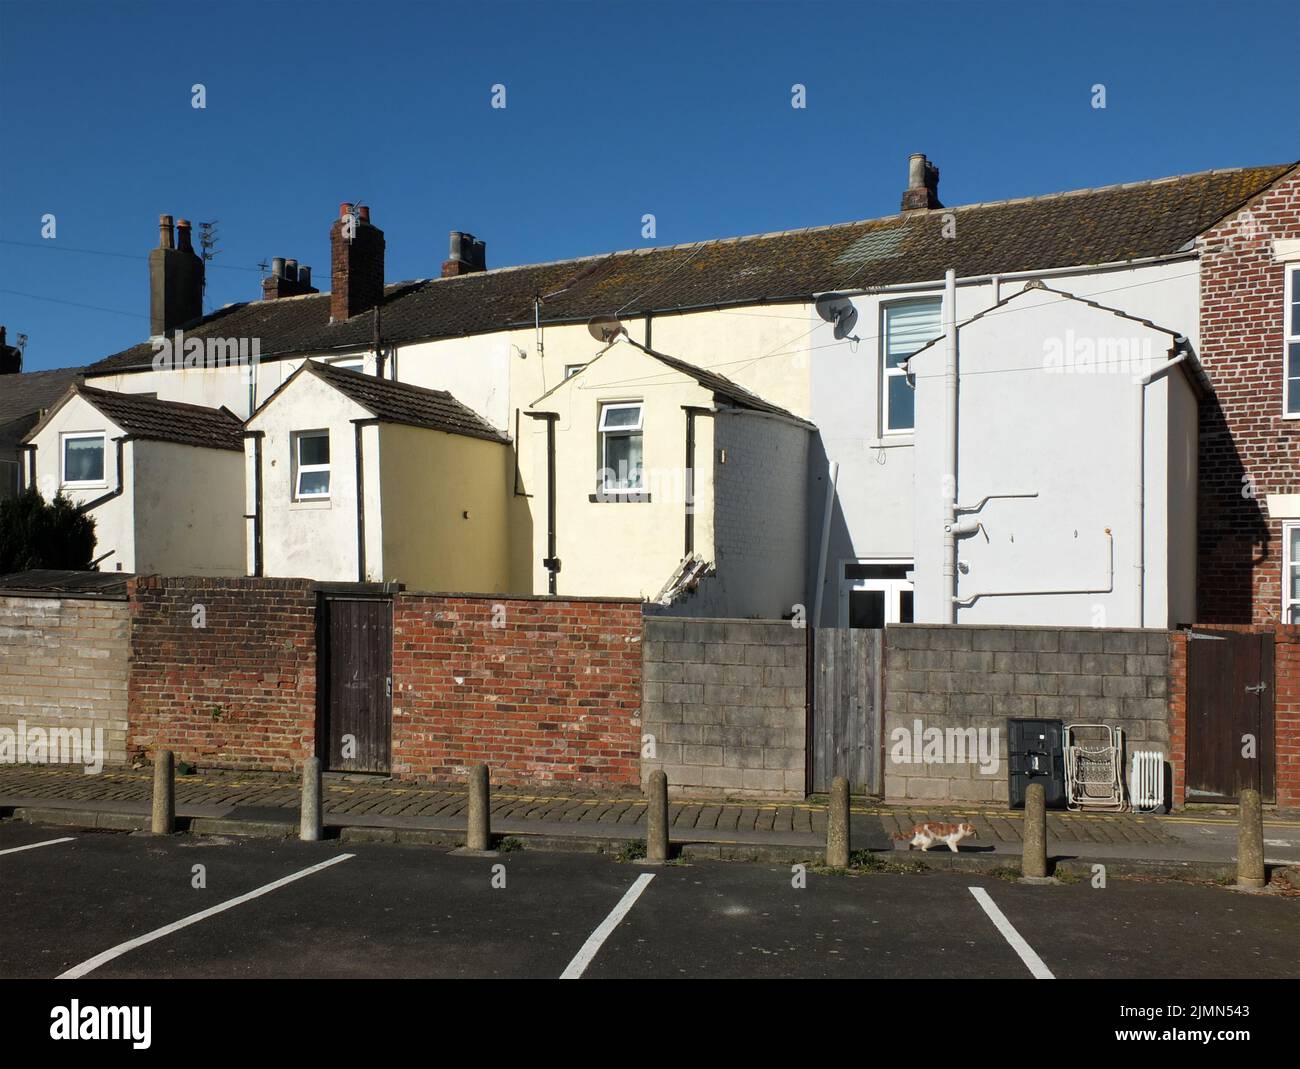 Vue sur l'arrière d'une rangée de petites maisons en terrasse, peintes en blanc et jaune, avec places de parking dans fleetwood lan Banque D'Images